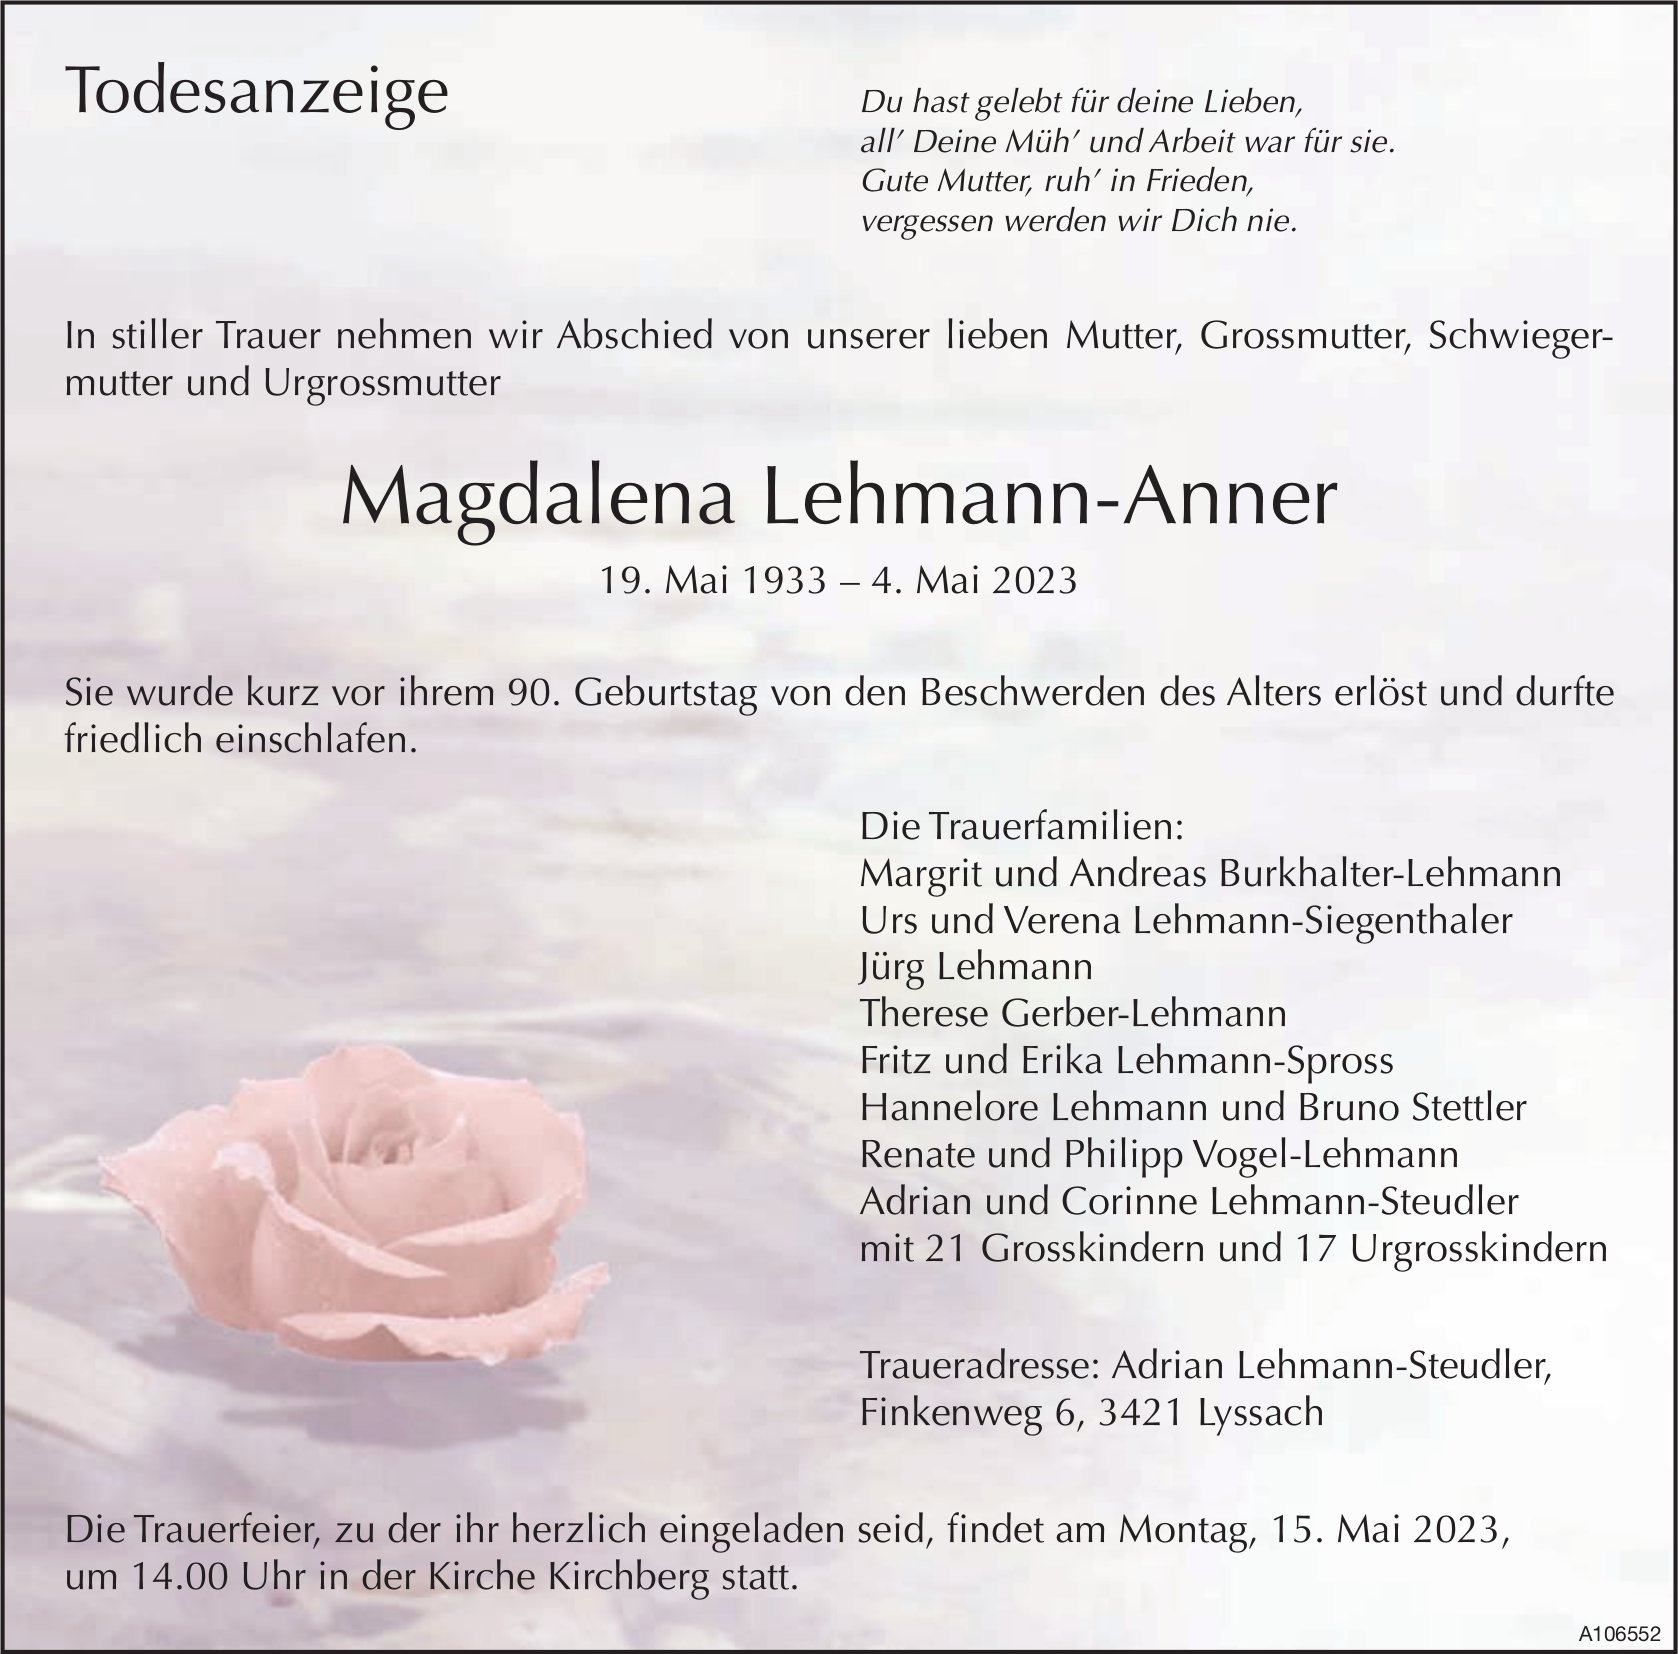 Magdalena Lehmann-Anner, Mai 2023 / TA